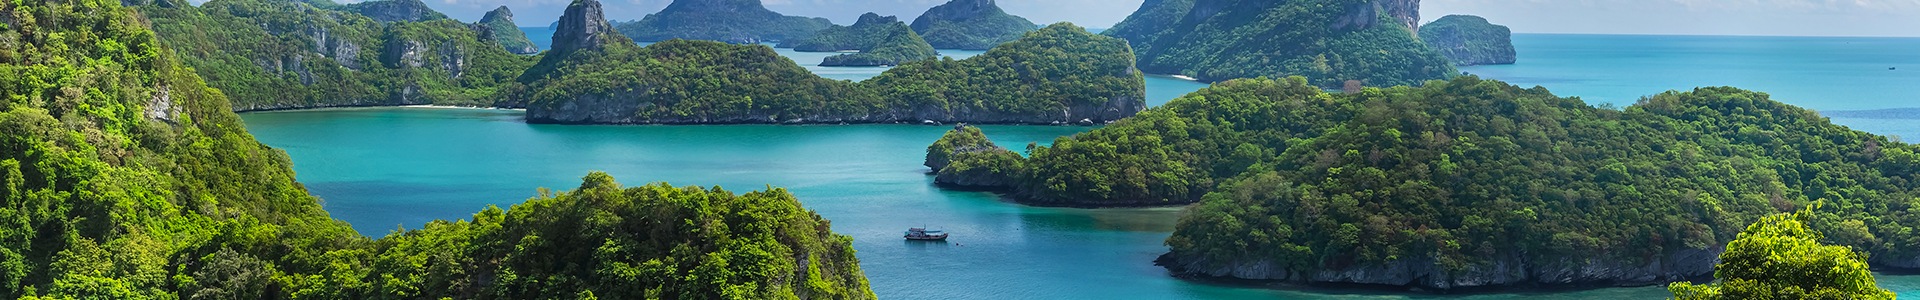 Quelle île de Thaïlande choisir